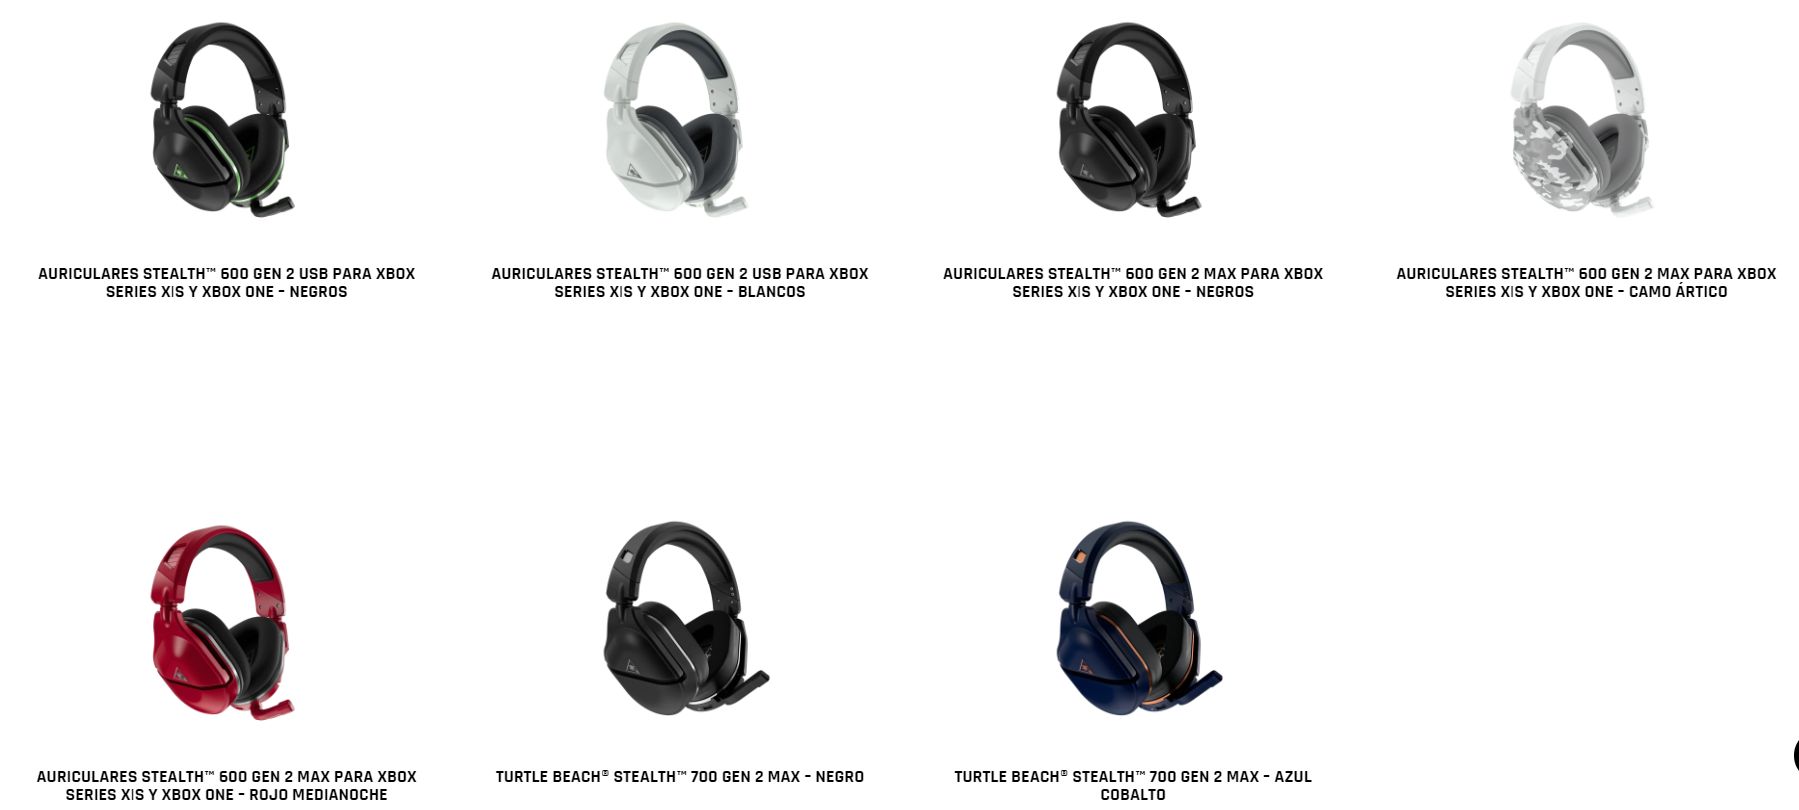 Los auriculares Stealth 700 GEn 2 MAX y los Stealth 600 Gen 2 MAX y Stealth 600 Gen 2 USB de Turtle Beach, ¡Ya están disponibles!